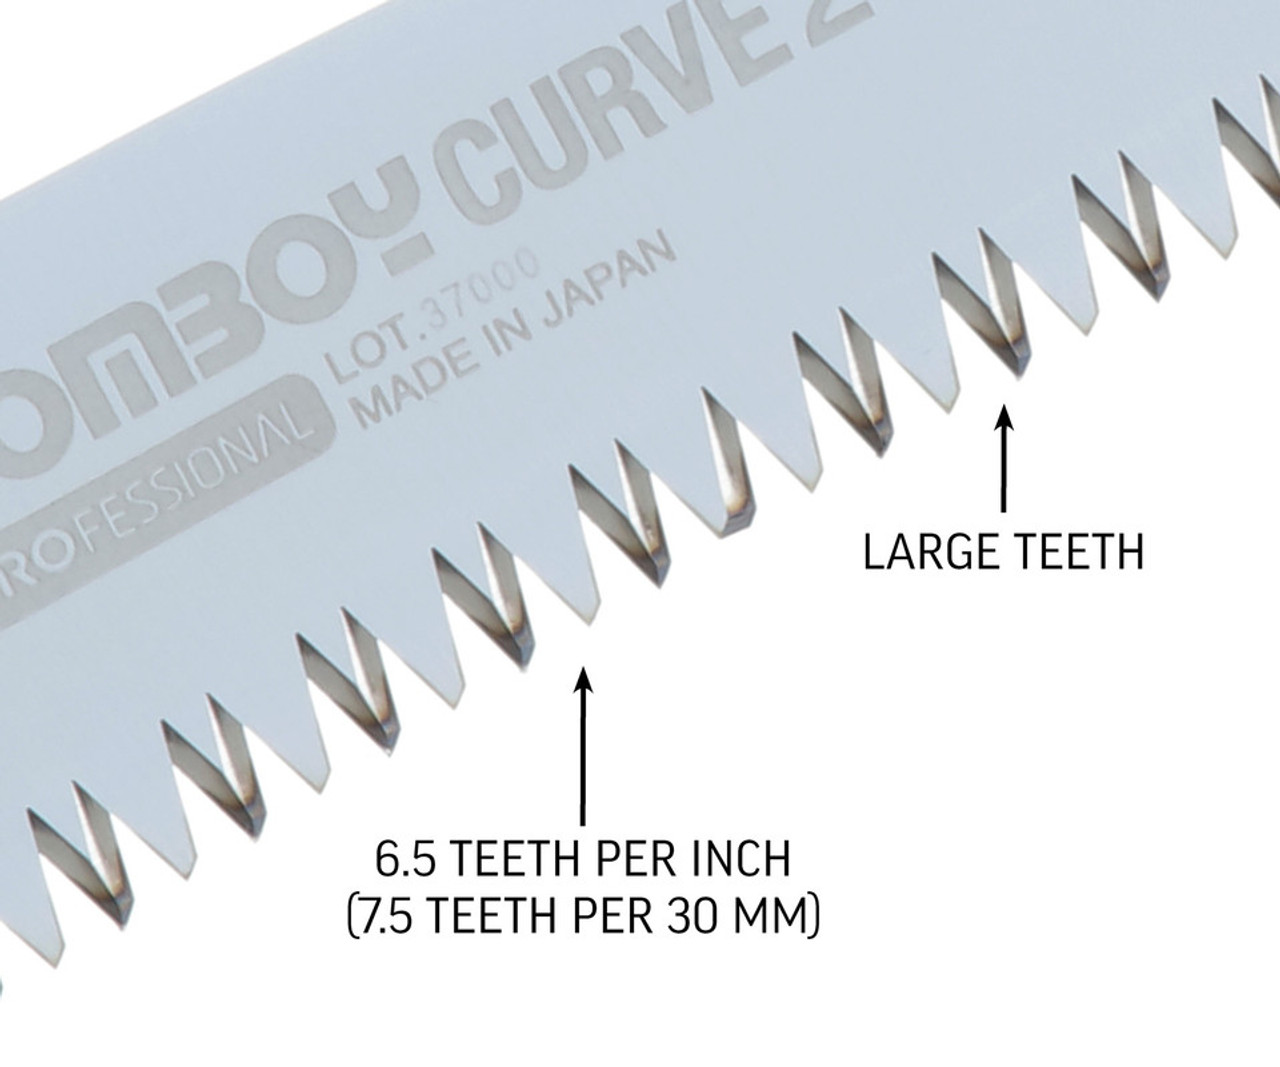 Silky Professional GOMBOY CURVE Professional 210mm LG Teeth Folding Saw